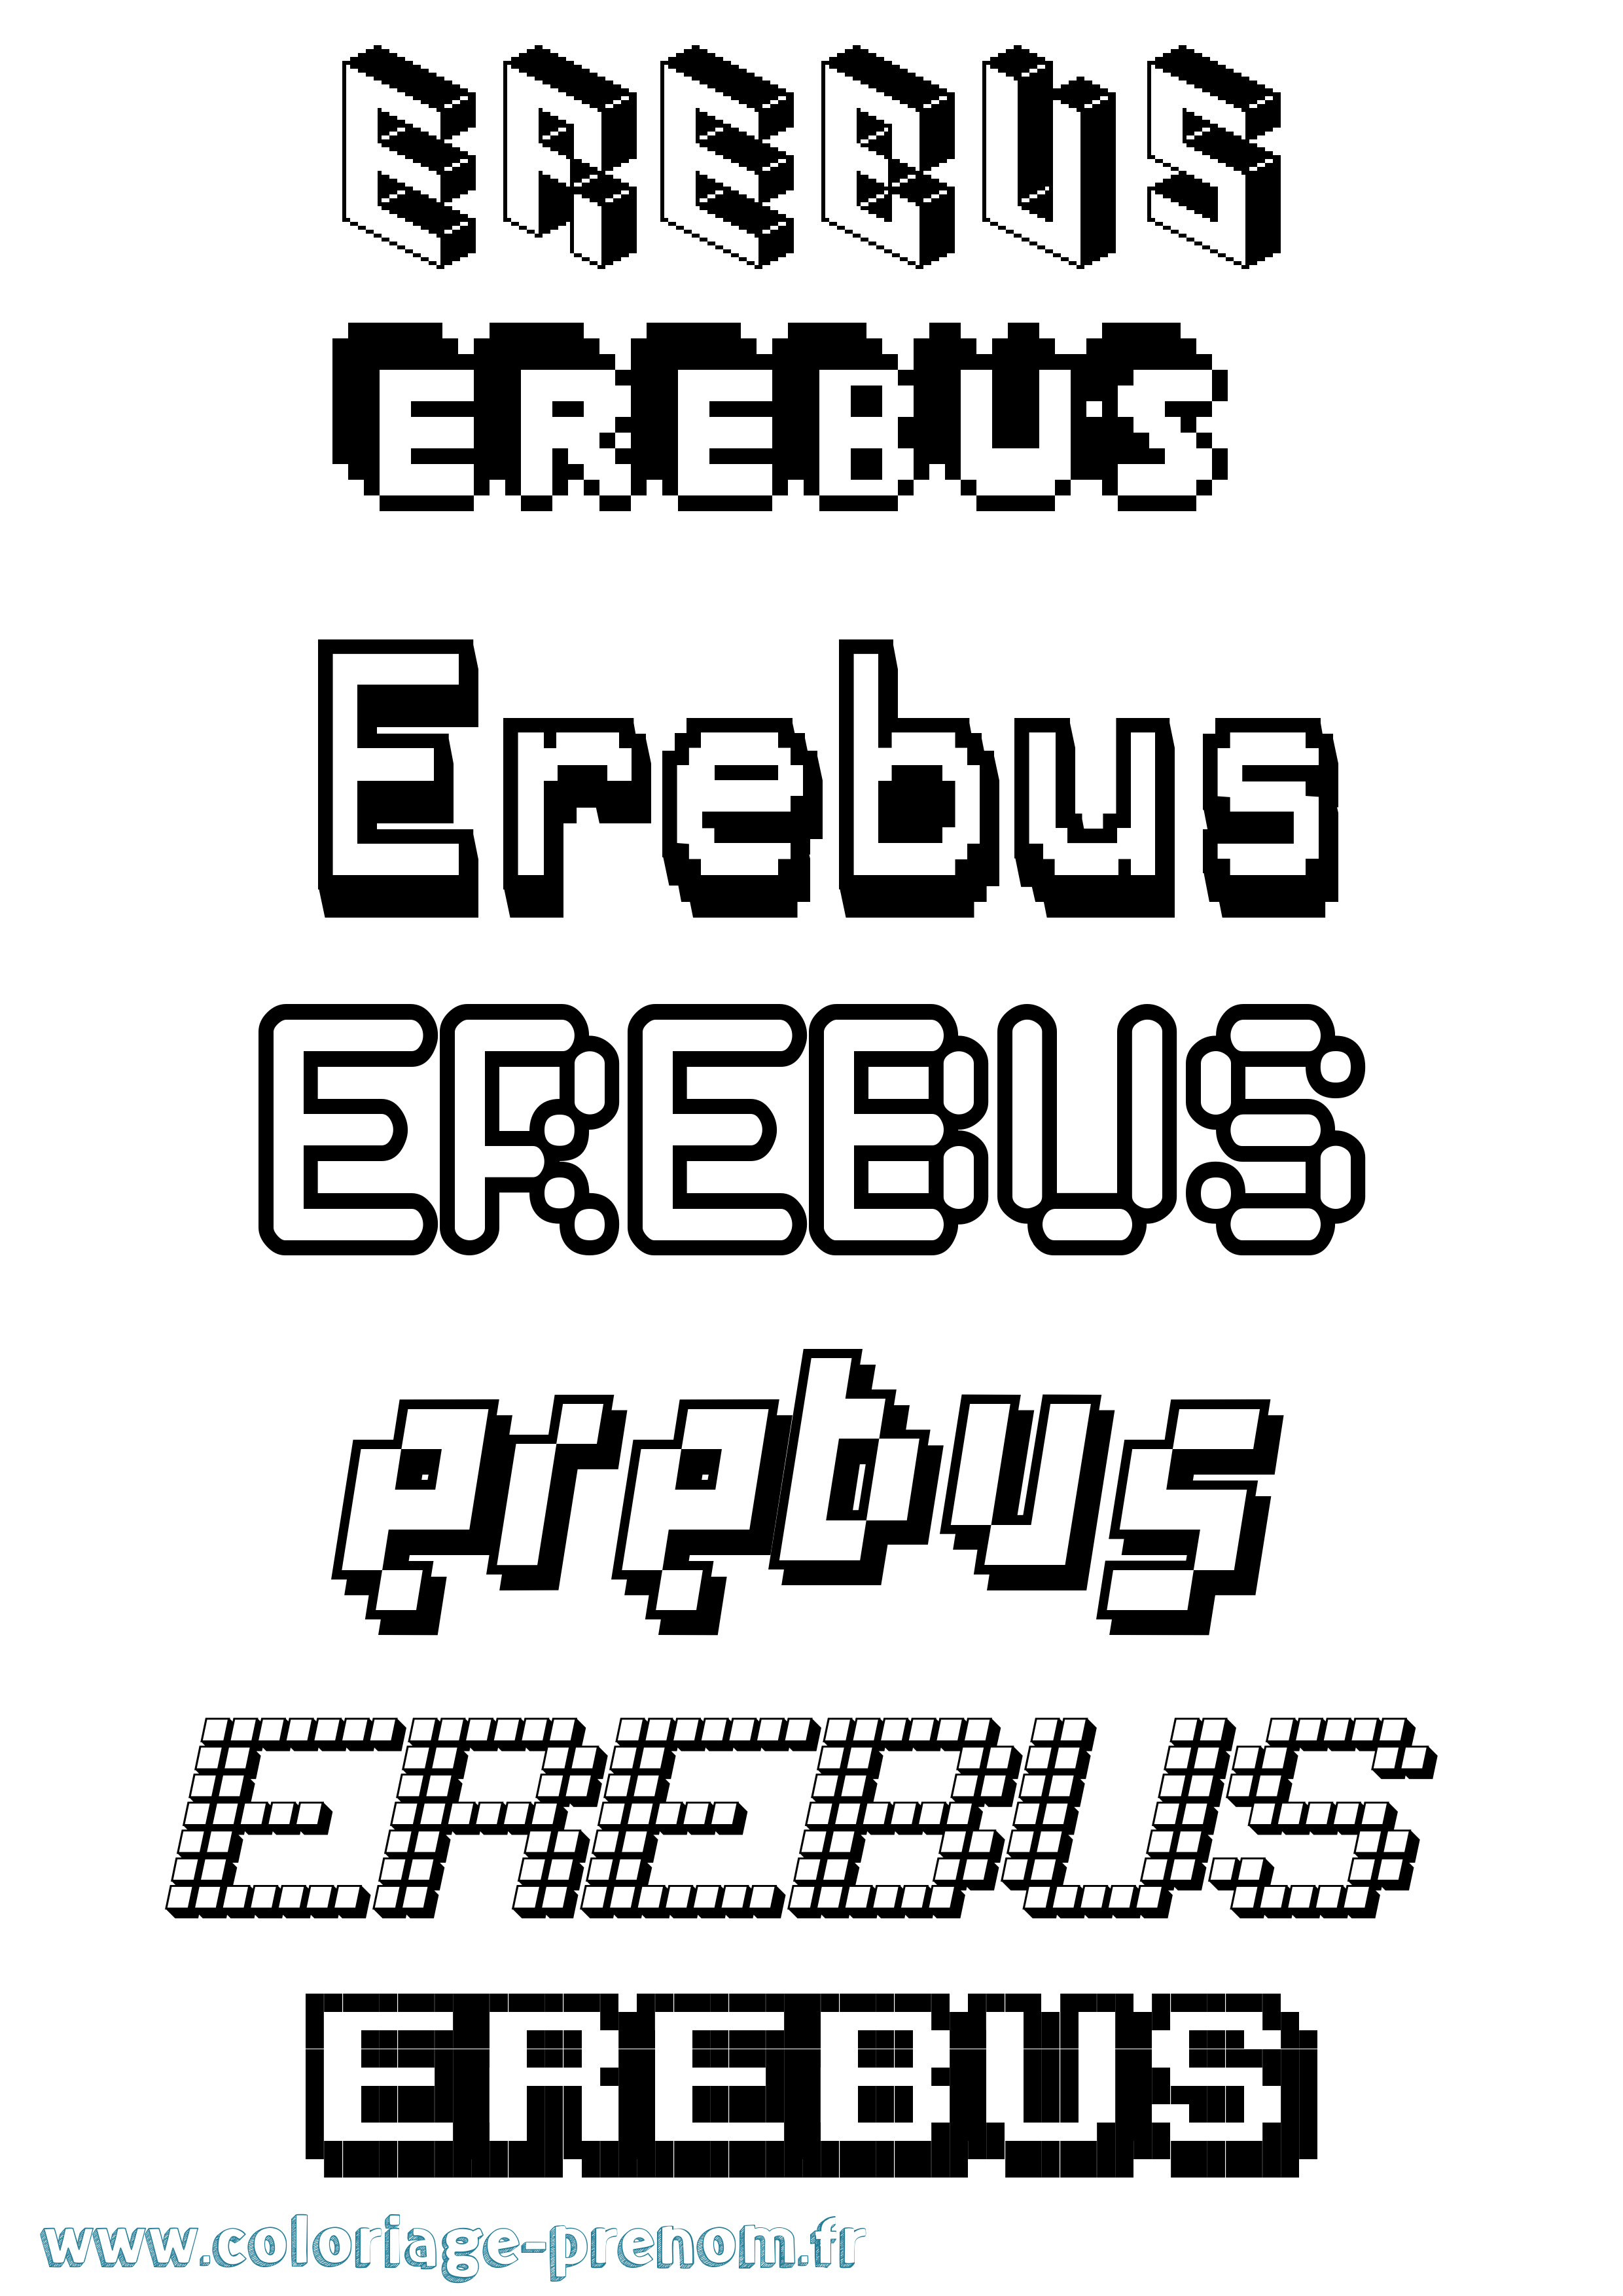 Coloriage prénom Erebus Pixel